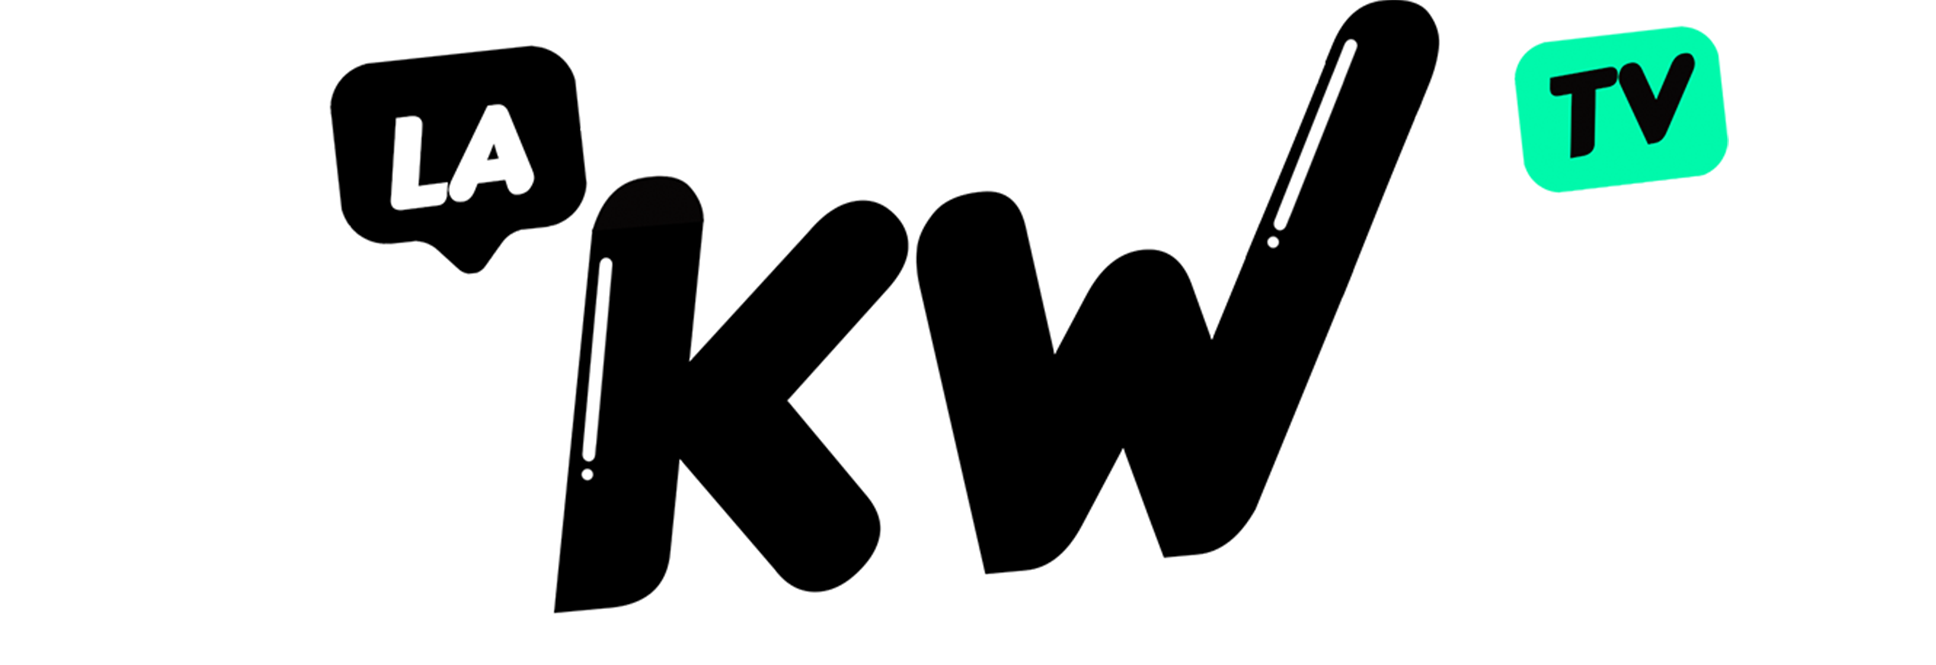 La KW TV - Centro de Ayuda